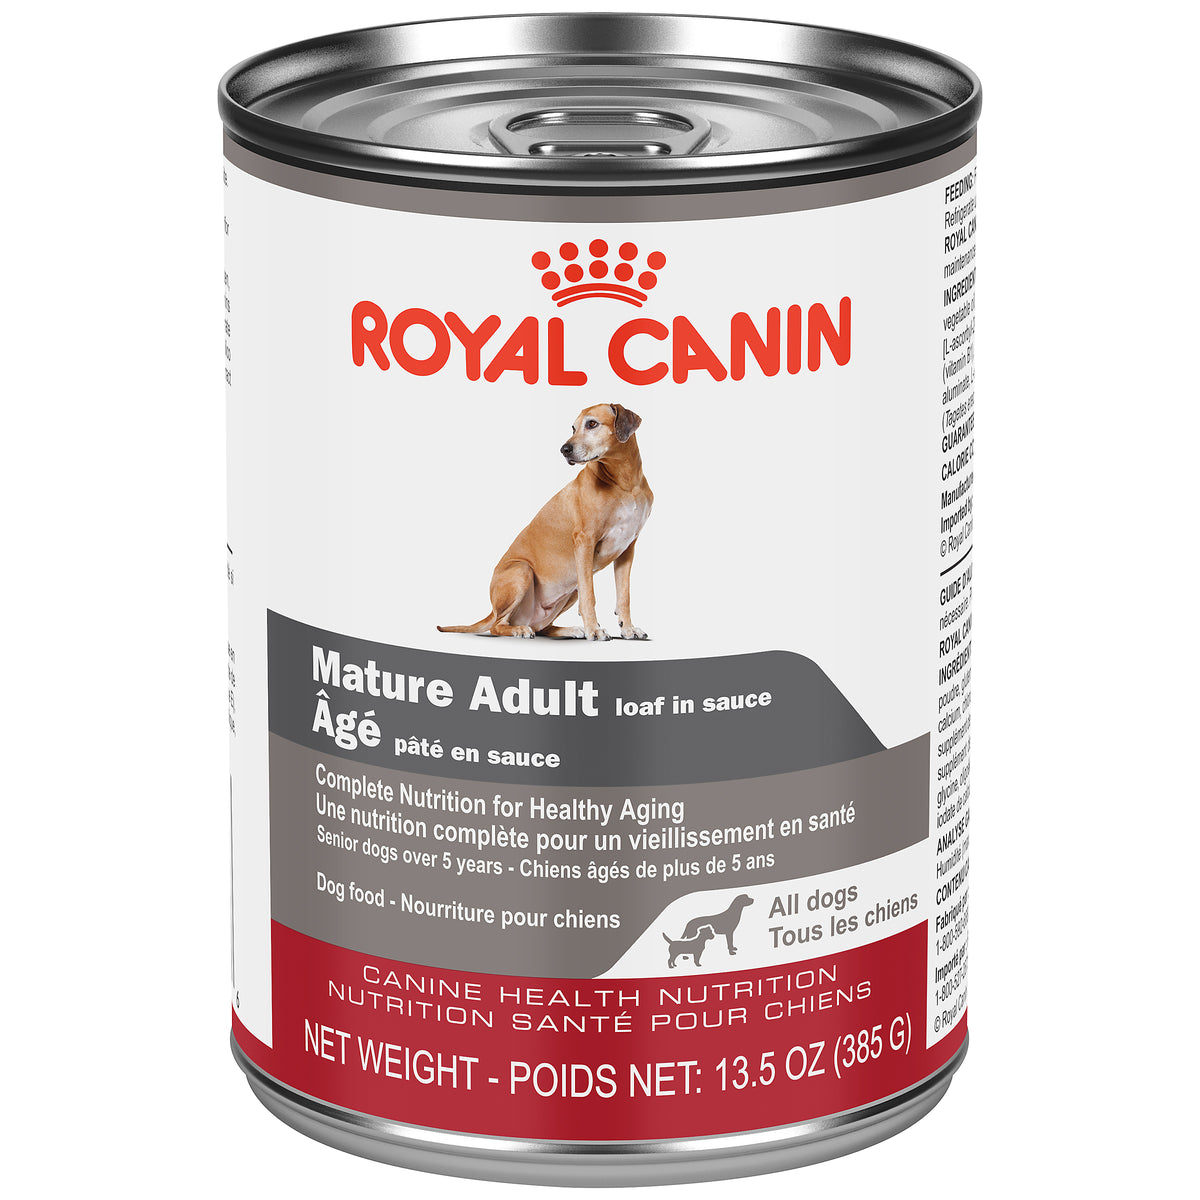 Royal Canin - ÂGÉ PÂTÉ EN SAUCE – nourriture en conserve pour chiens (385g)